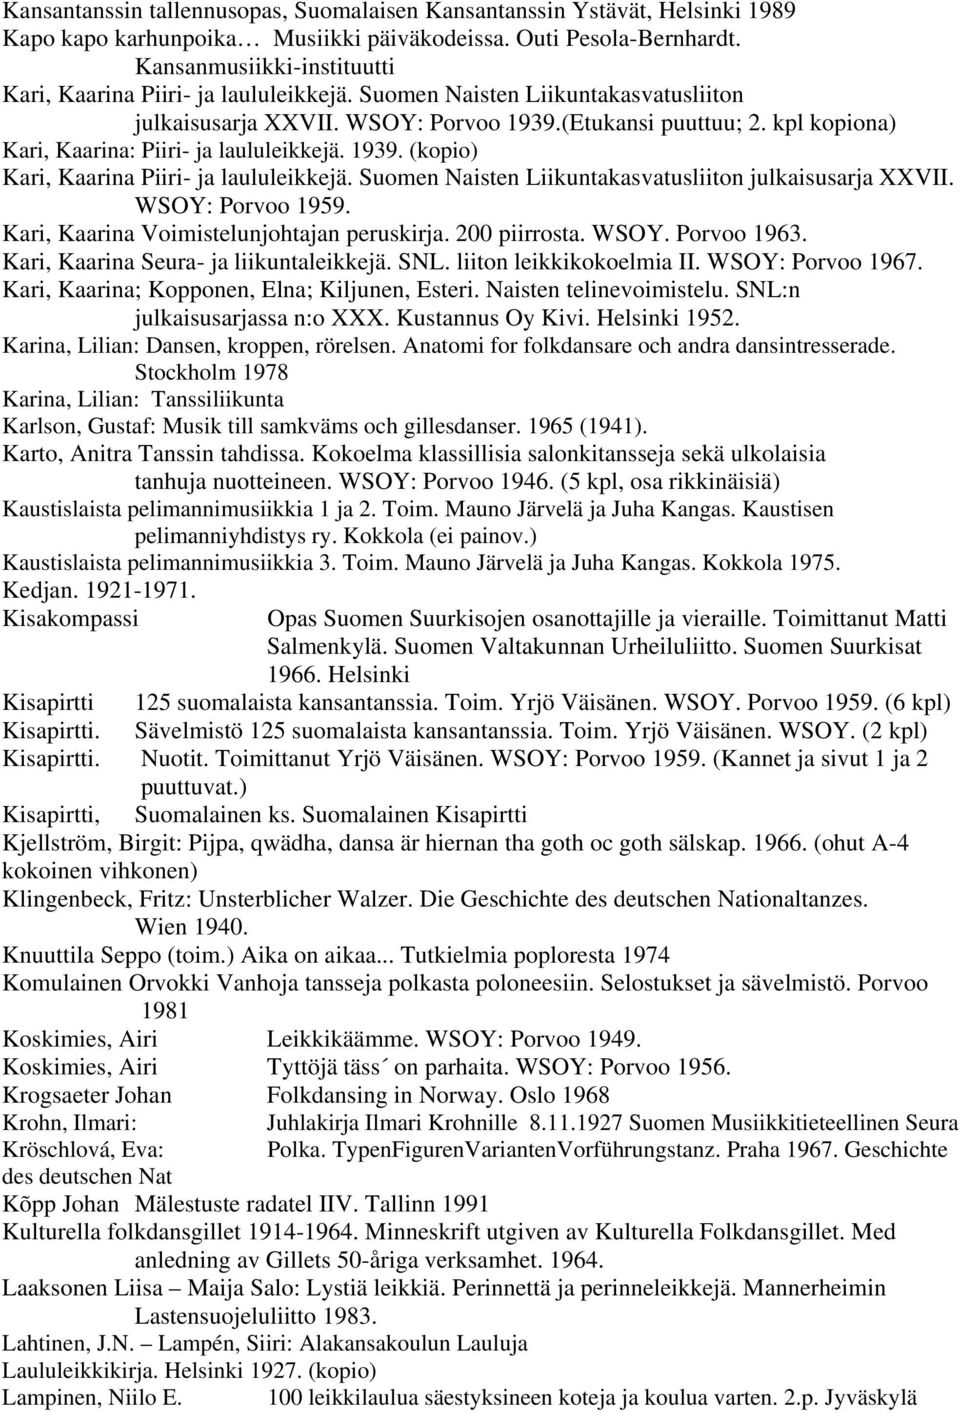 kpl kopiona) Kari, Kaarina: Piiri- ja laululeikkejä. 1939. (kopio) Kari, Kaarina Piiri- ja laululeikkejä. Suomen Naisten Liikuntakasvatusliiton julkaisusarja XXVII. WSOY: Porvoo 1959.